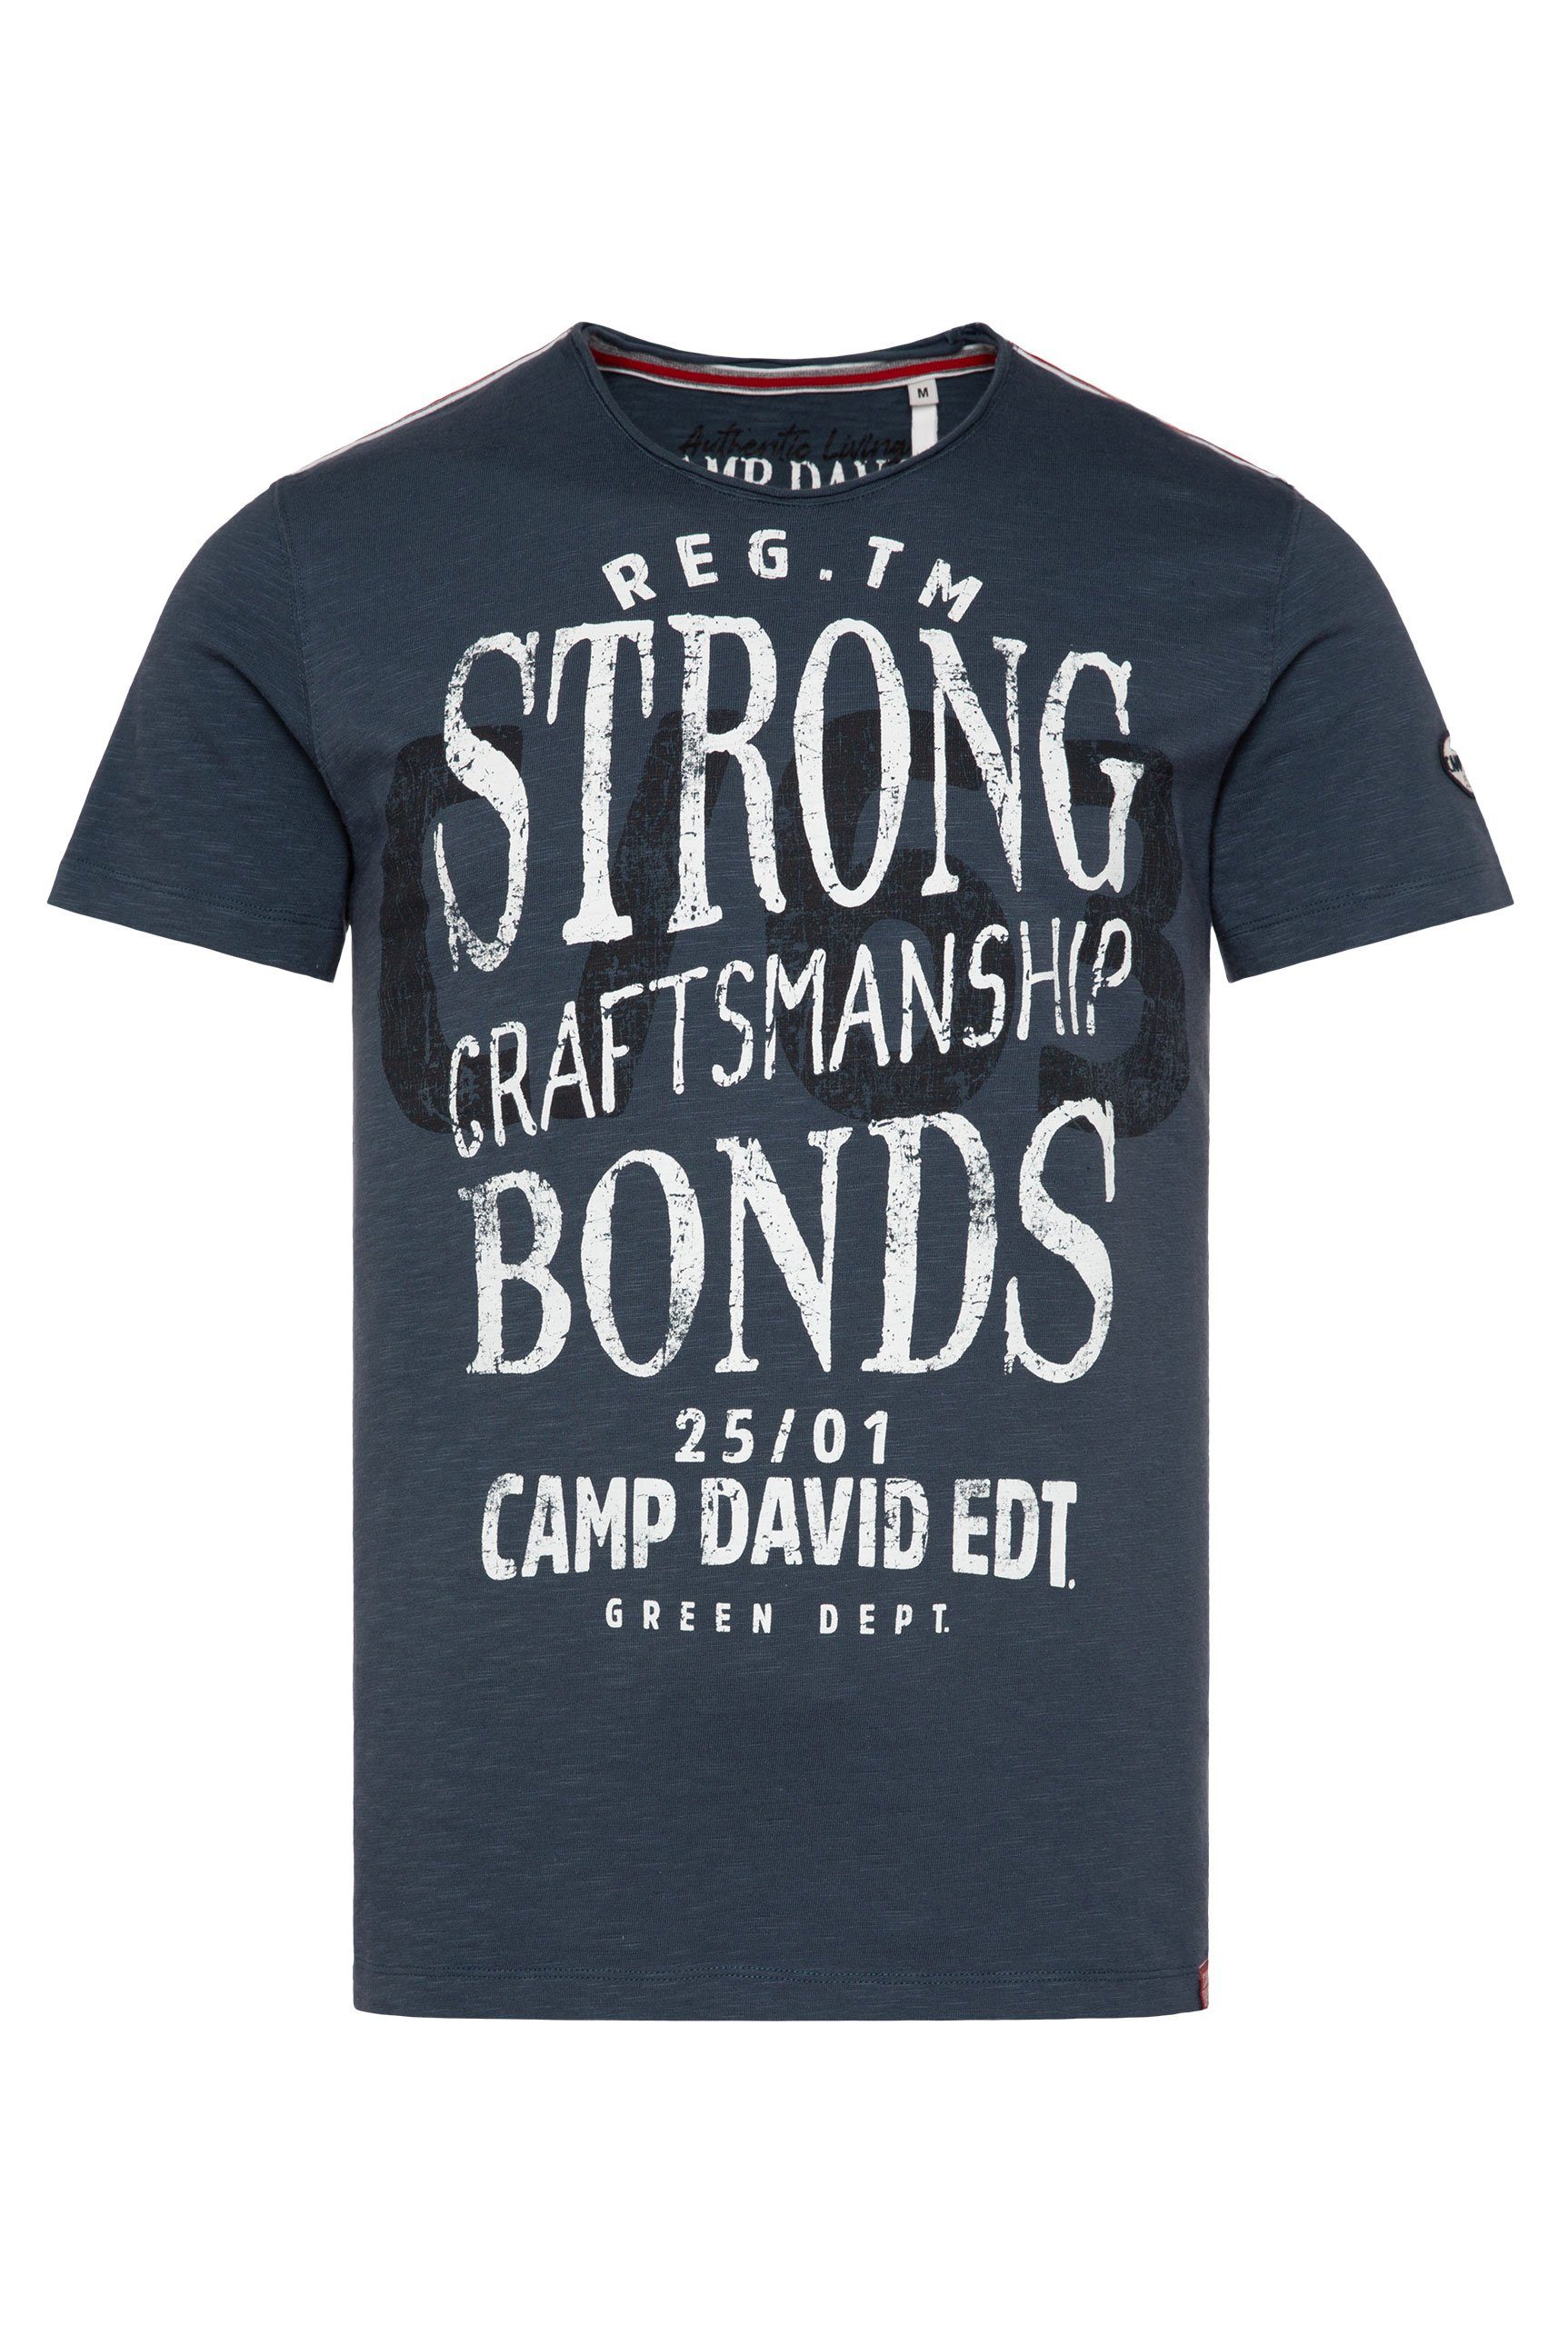 DAVID und Logoprints vorne mit dark CAMP teal T-Shirt hinten